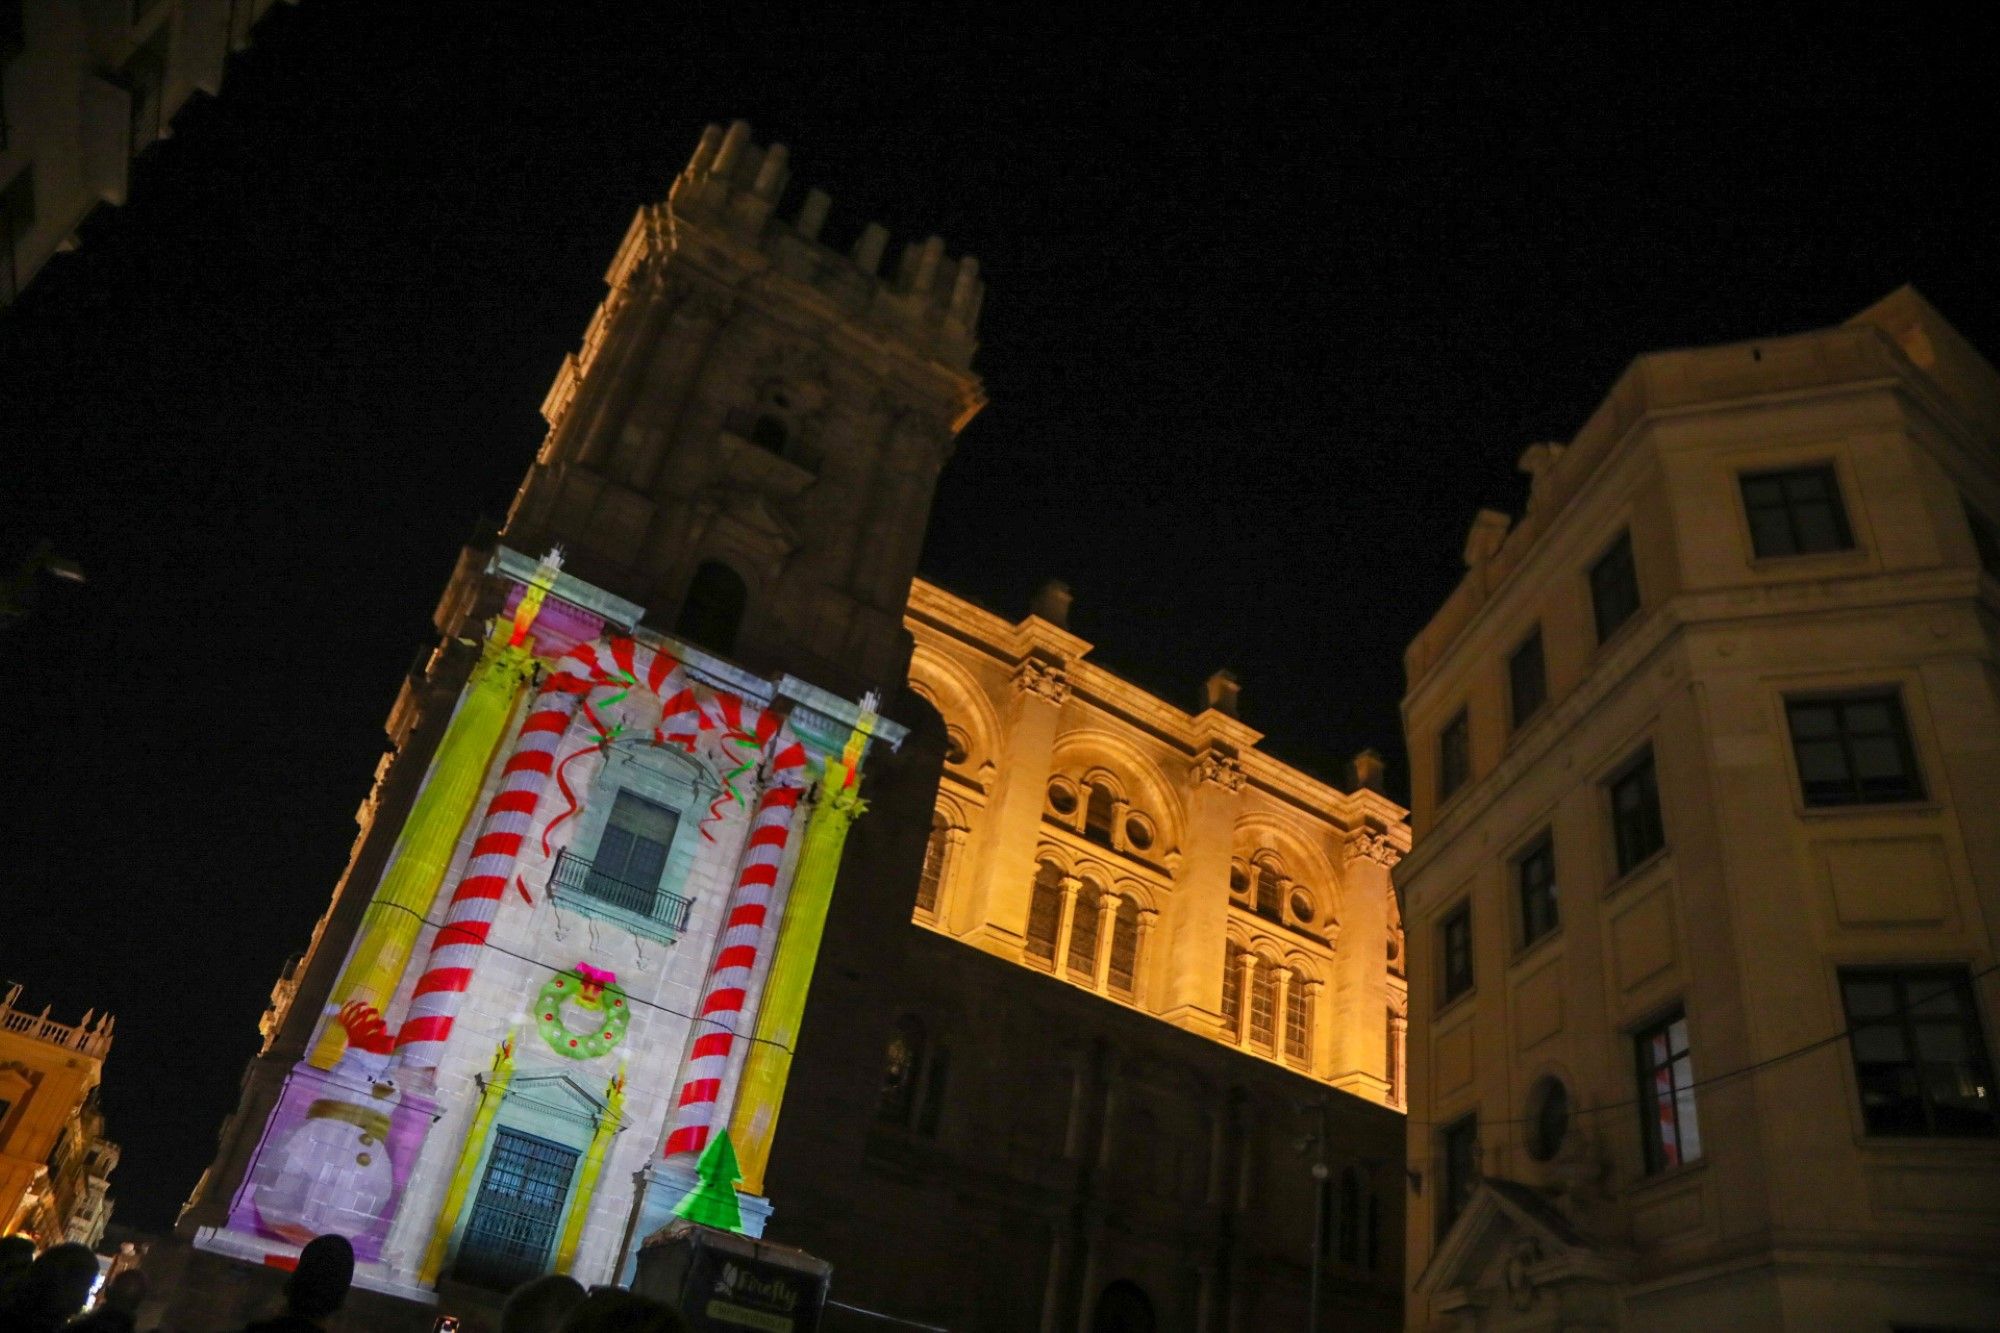 Vídeomapping navideño en la torre mocha de la Catedral